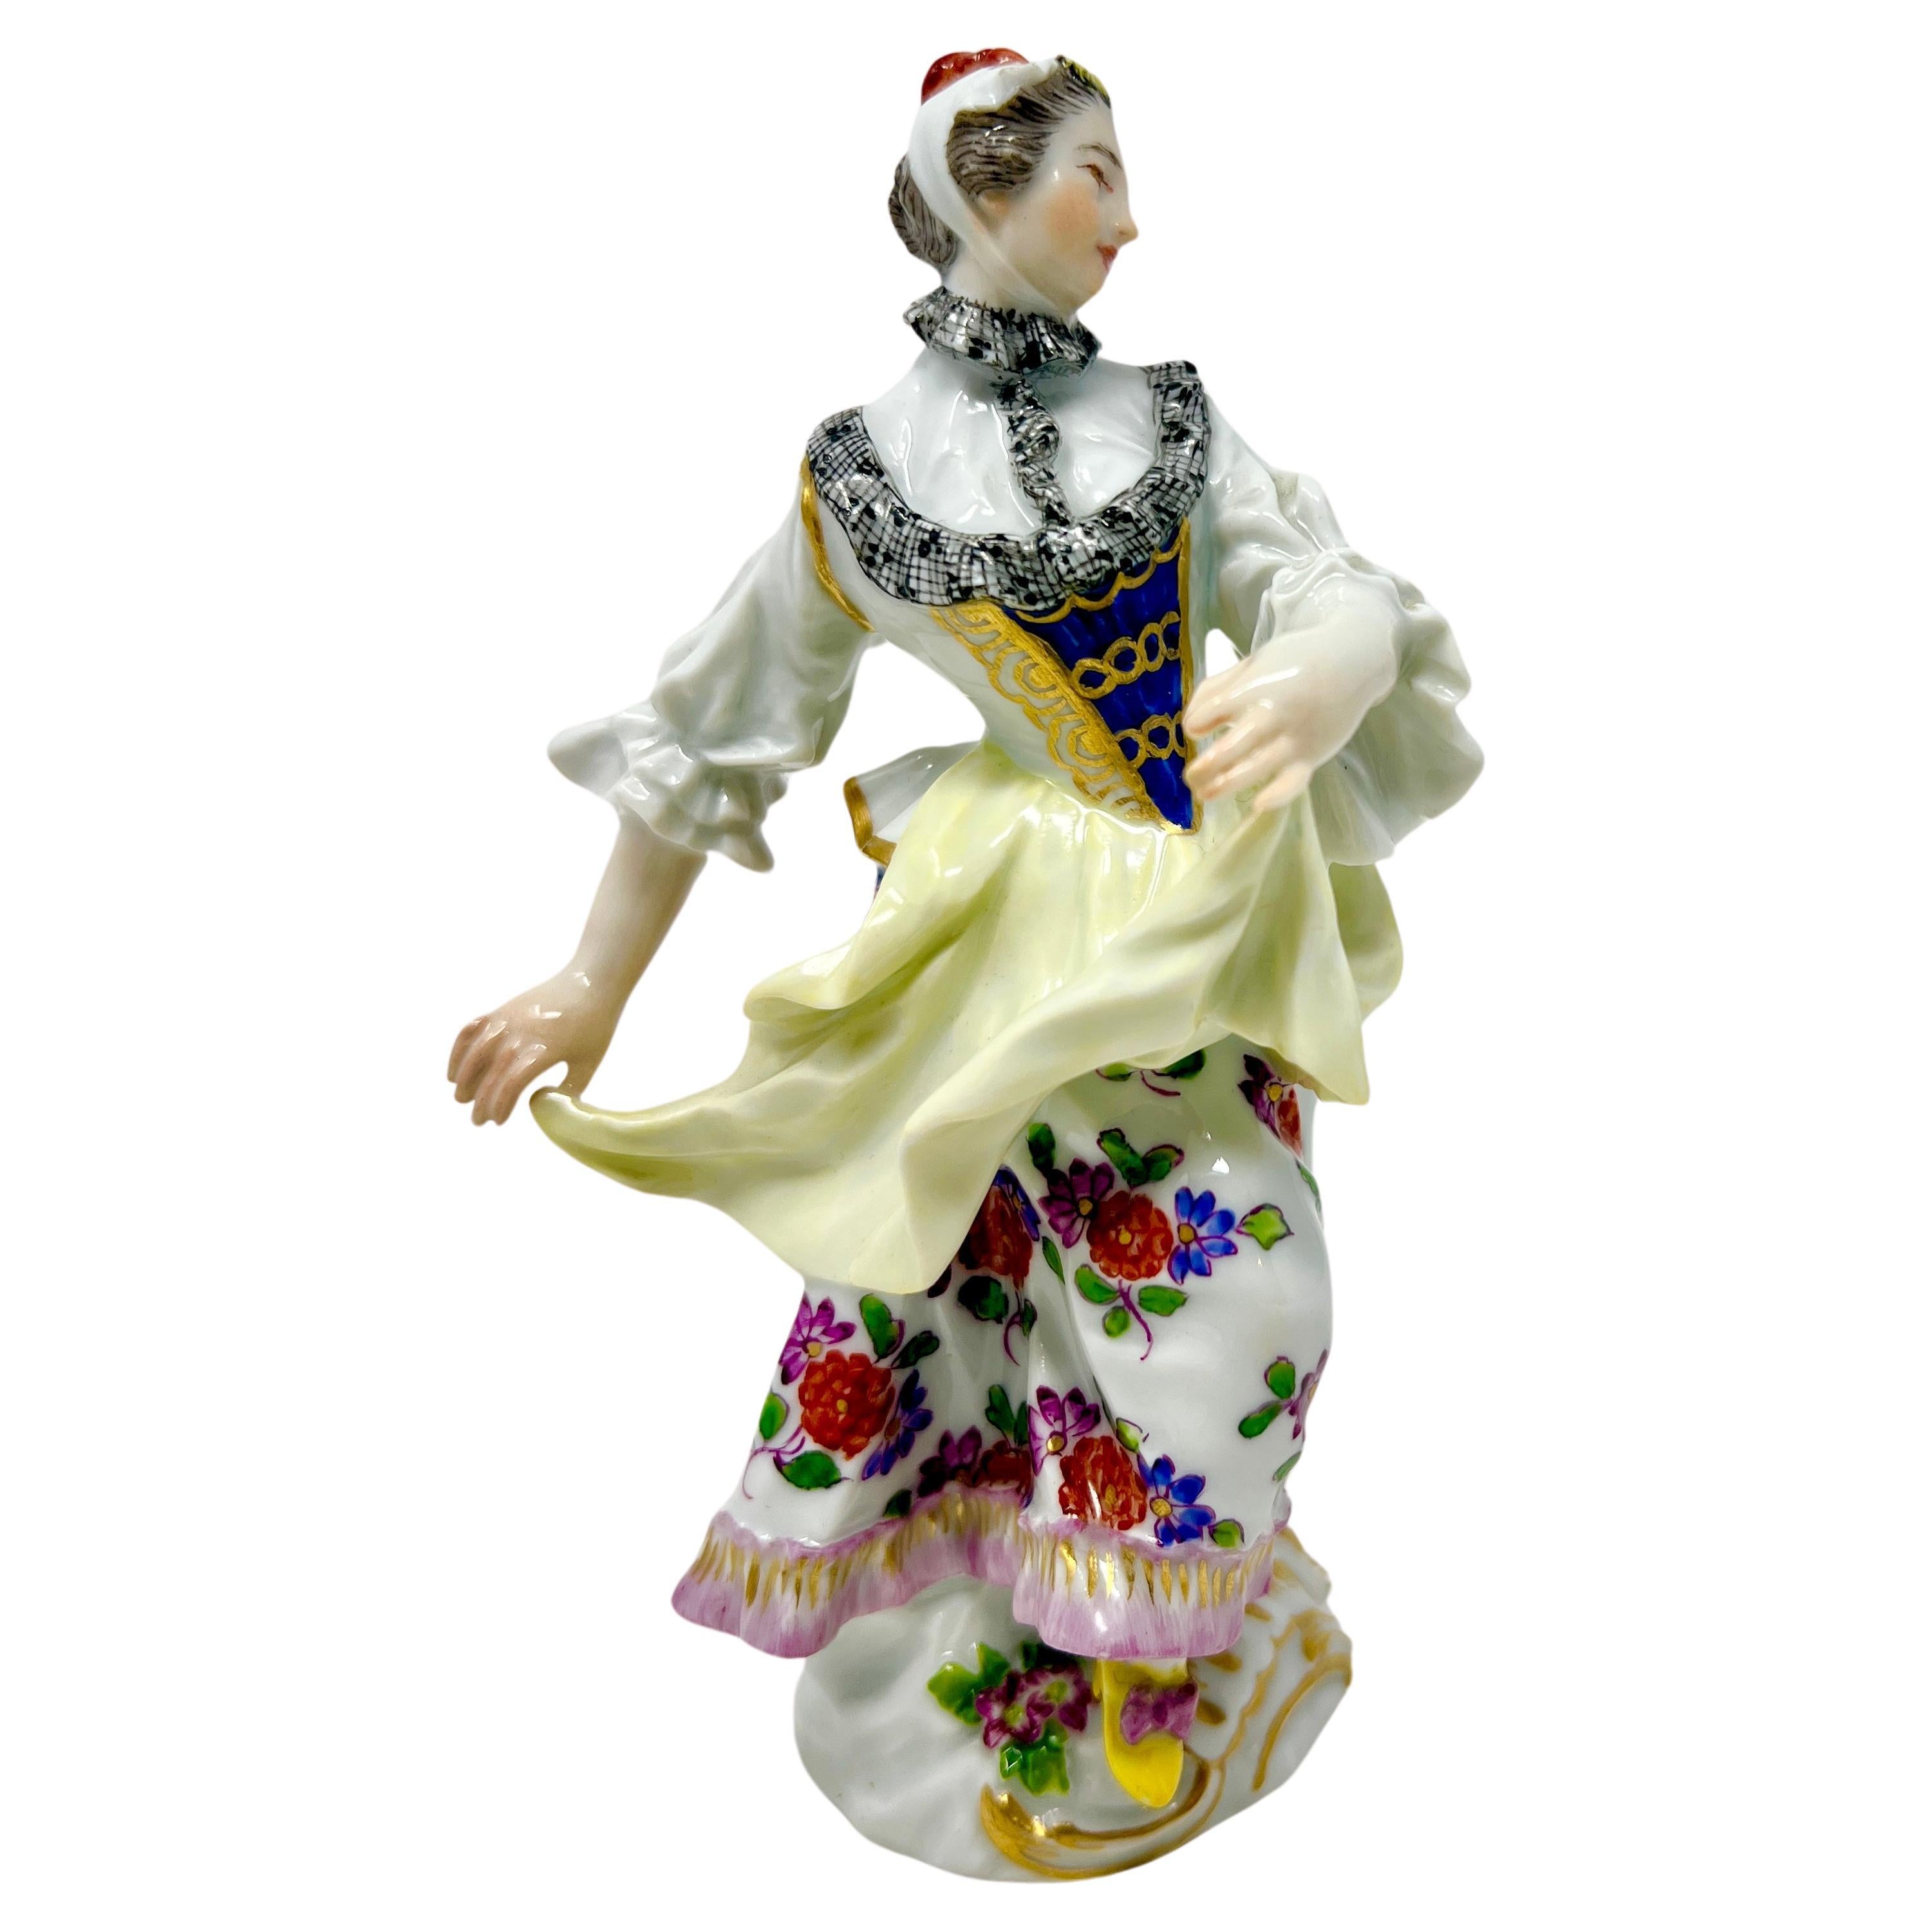 Ancienne dame en porcelaine de Meissen allemande du 19e siècle, vers 1880.